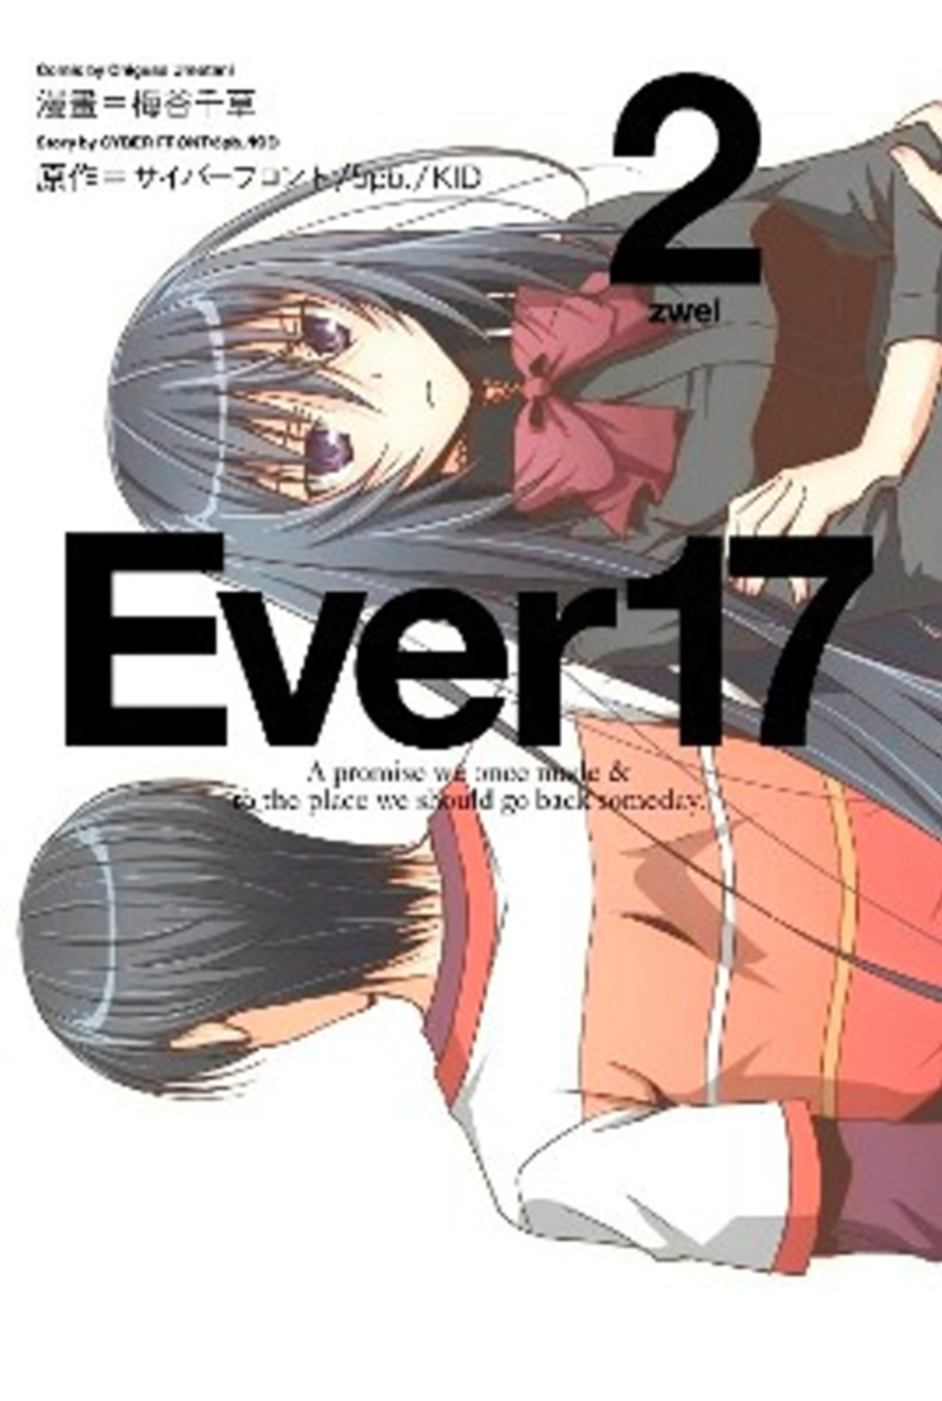 Ever 17(02)完